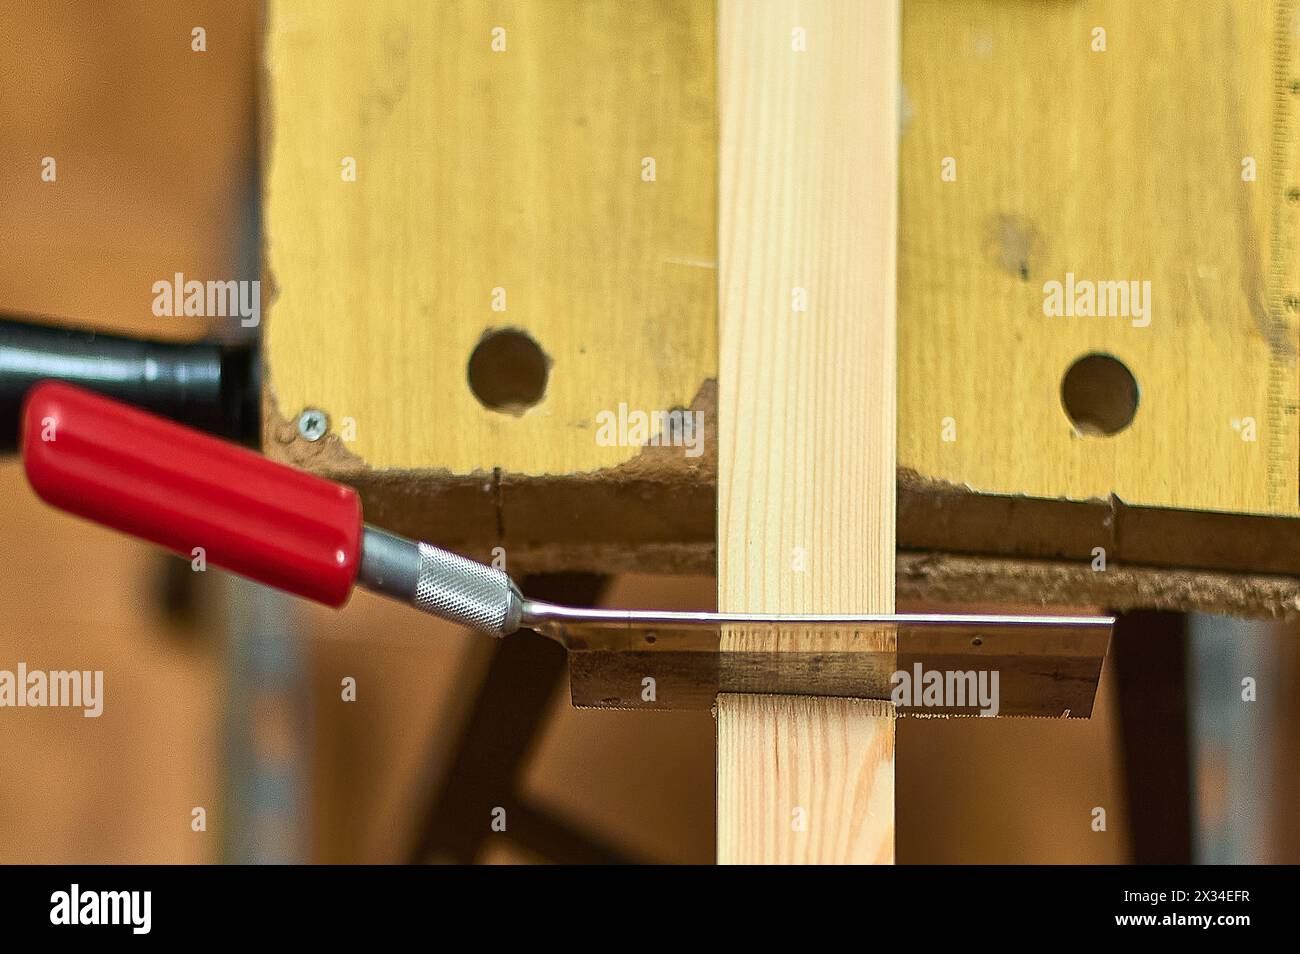 Gros plan d'une scie coupant une planche de bois dans un atelier de menuiserie, mettant en valeur la précision et l'habileté dans le travail manuel. Banque D'Images